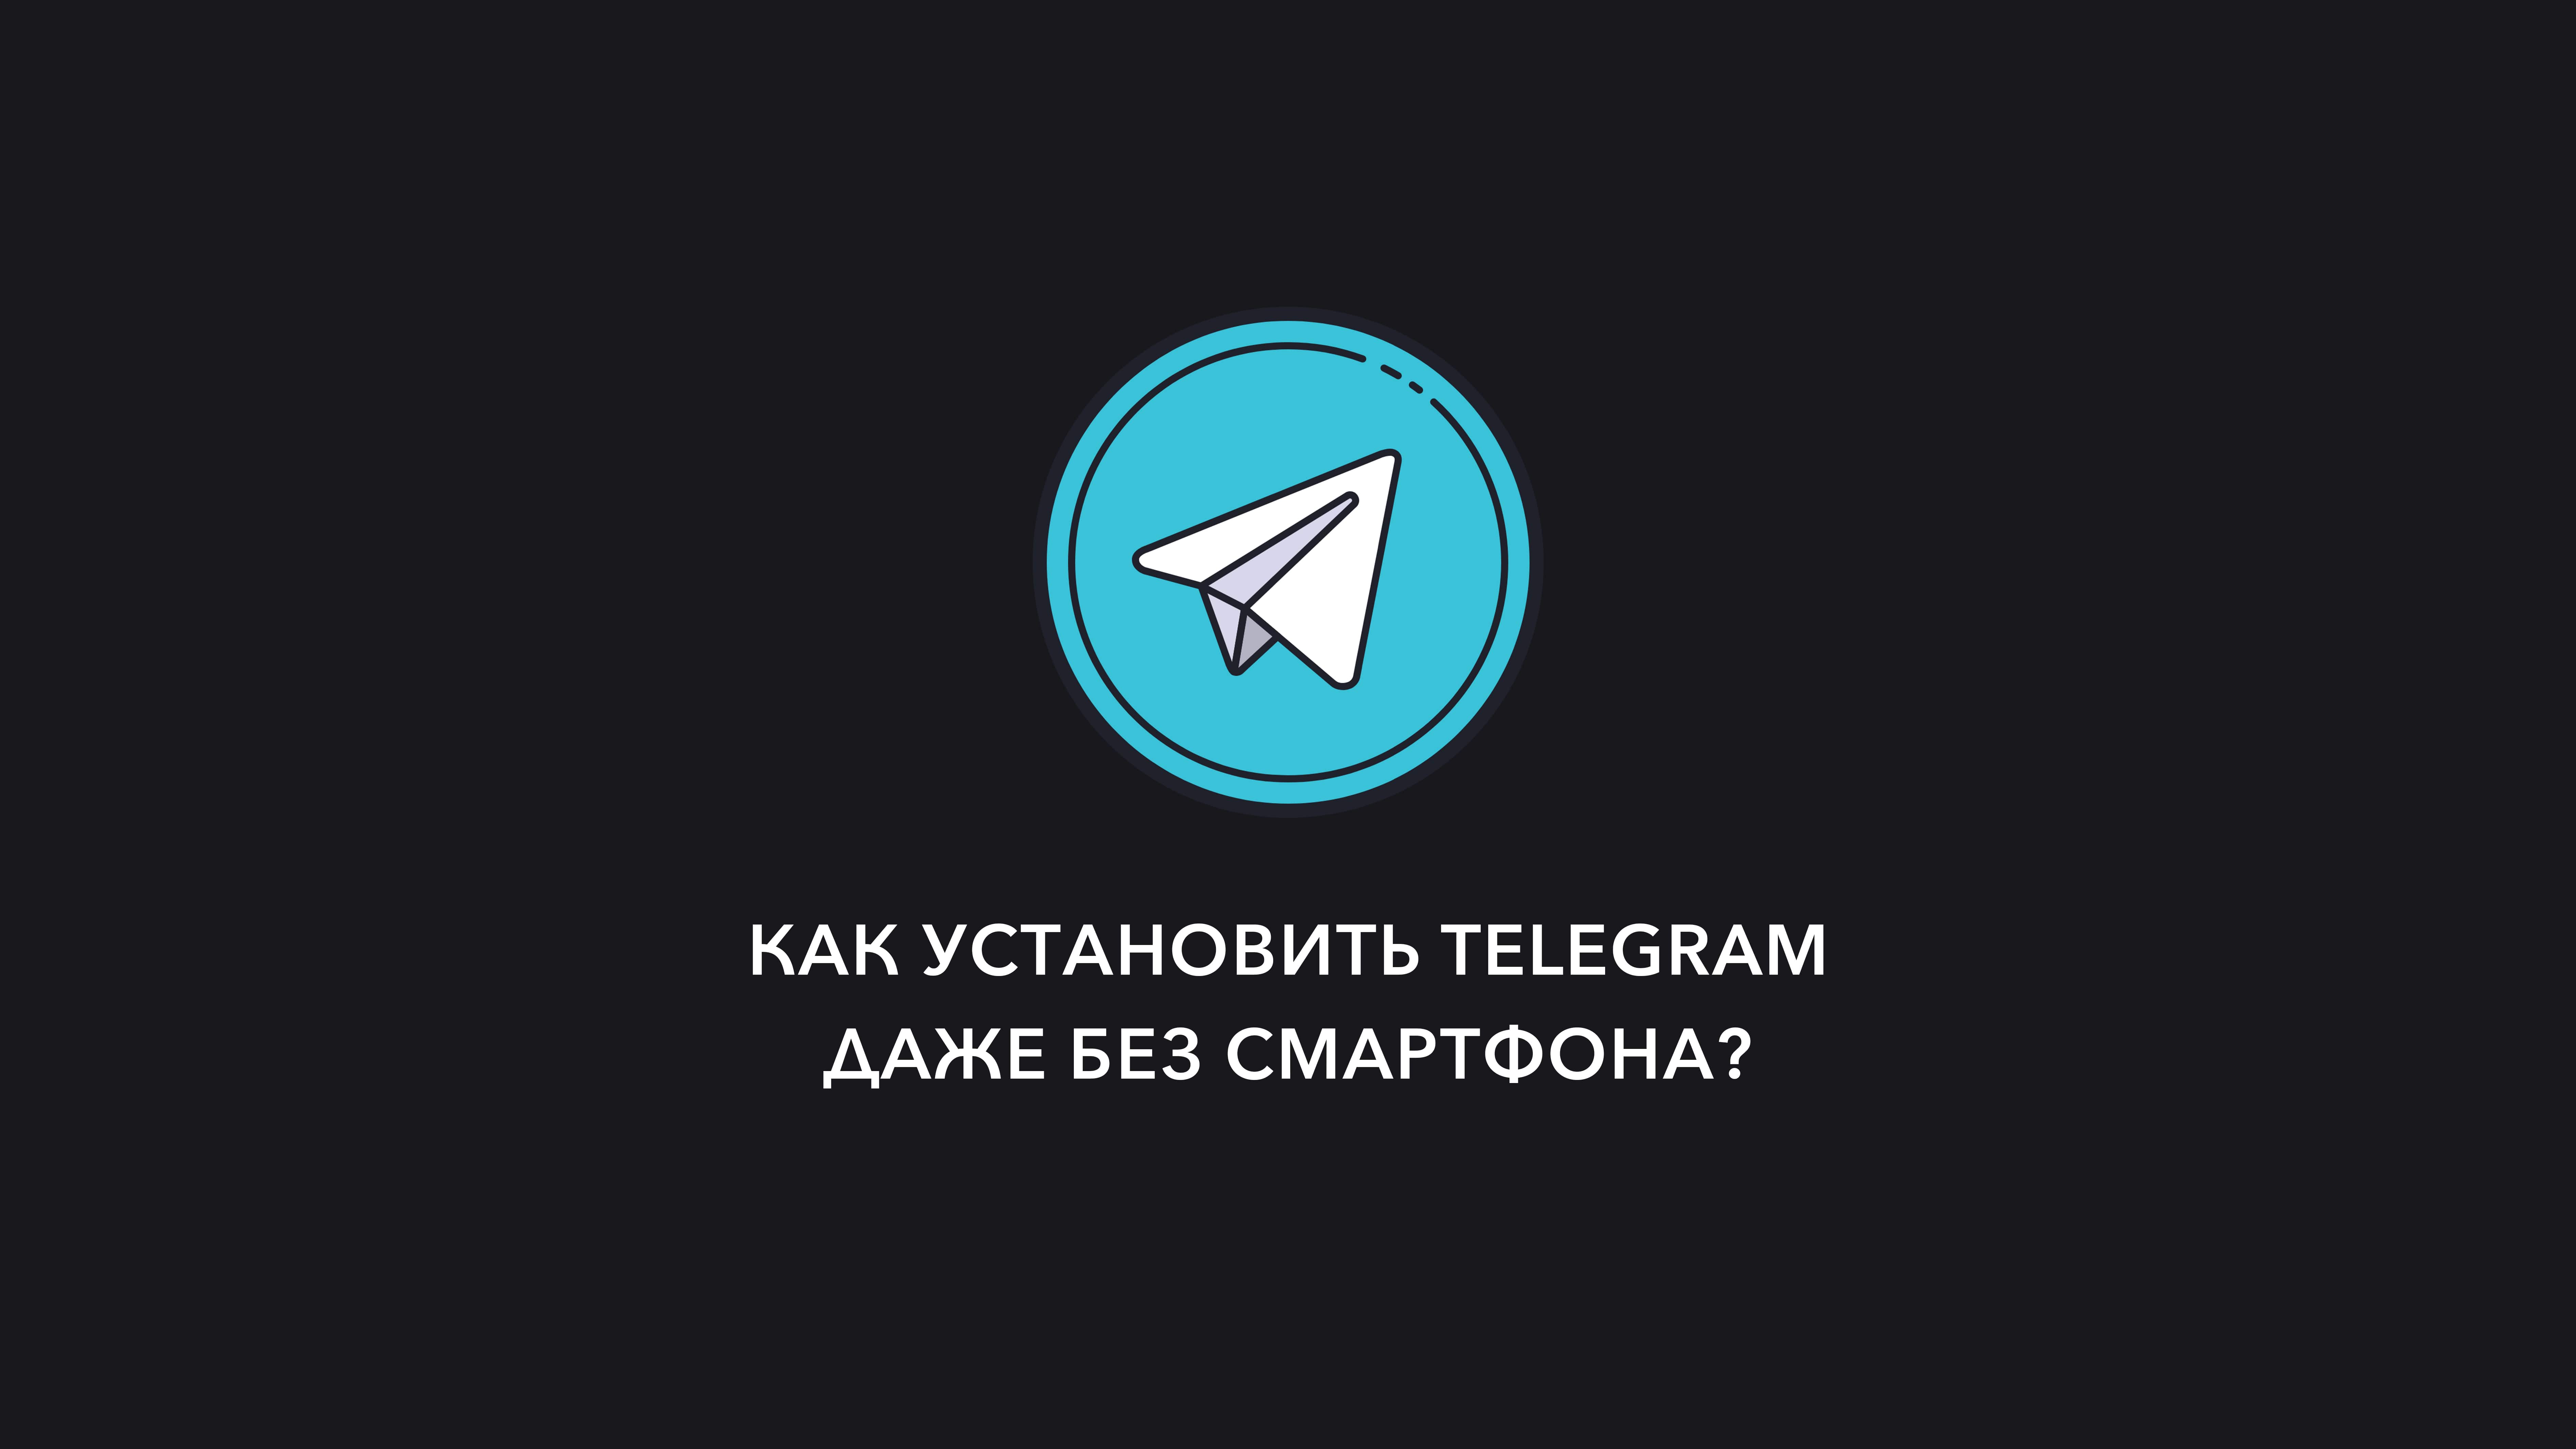 Настроить телеграмм на андроид бесплатно на русском фото 32